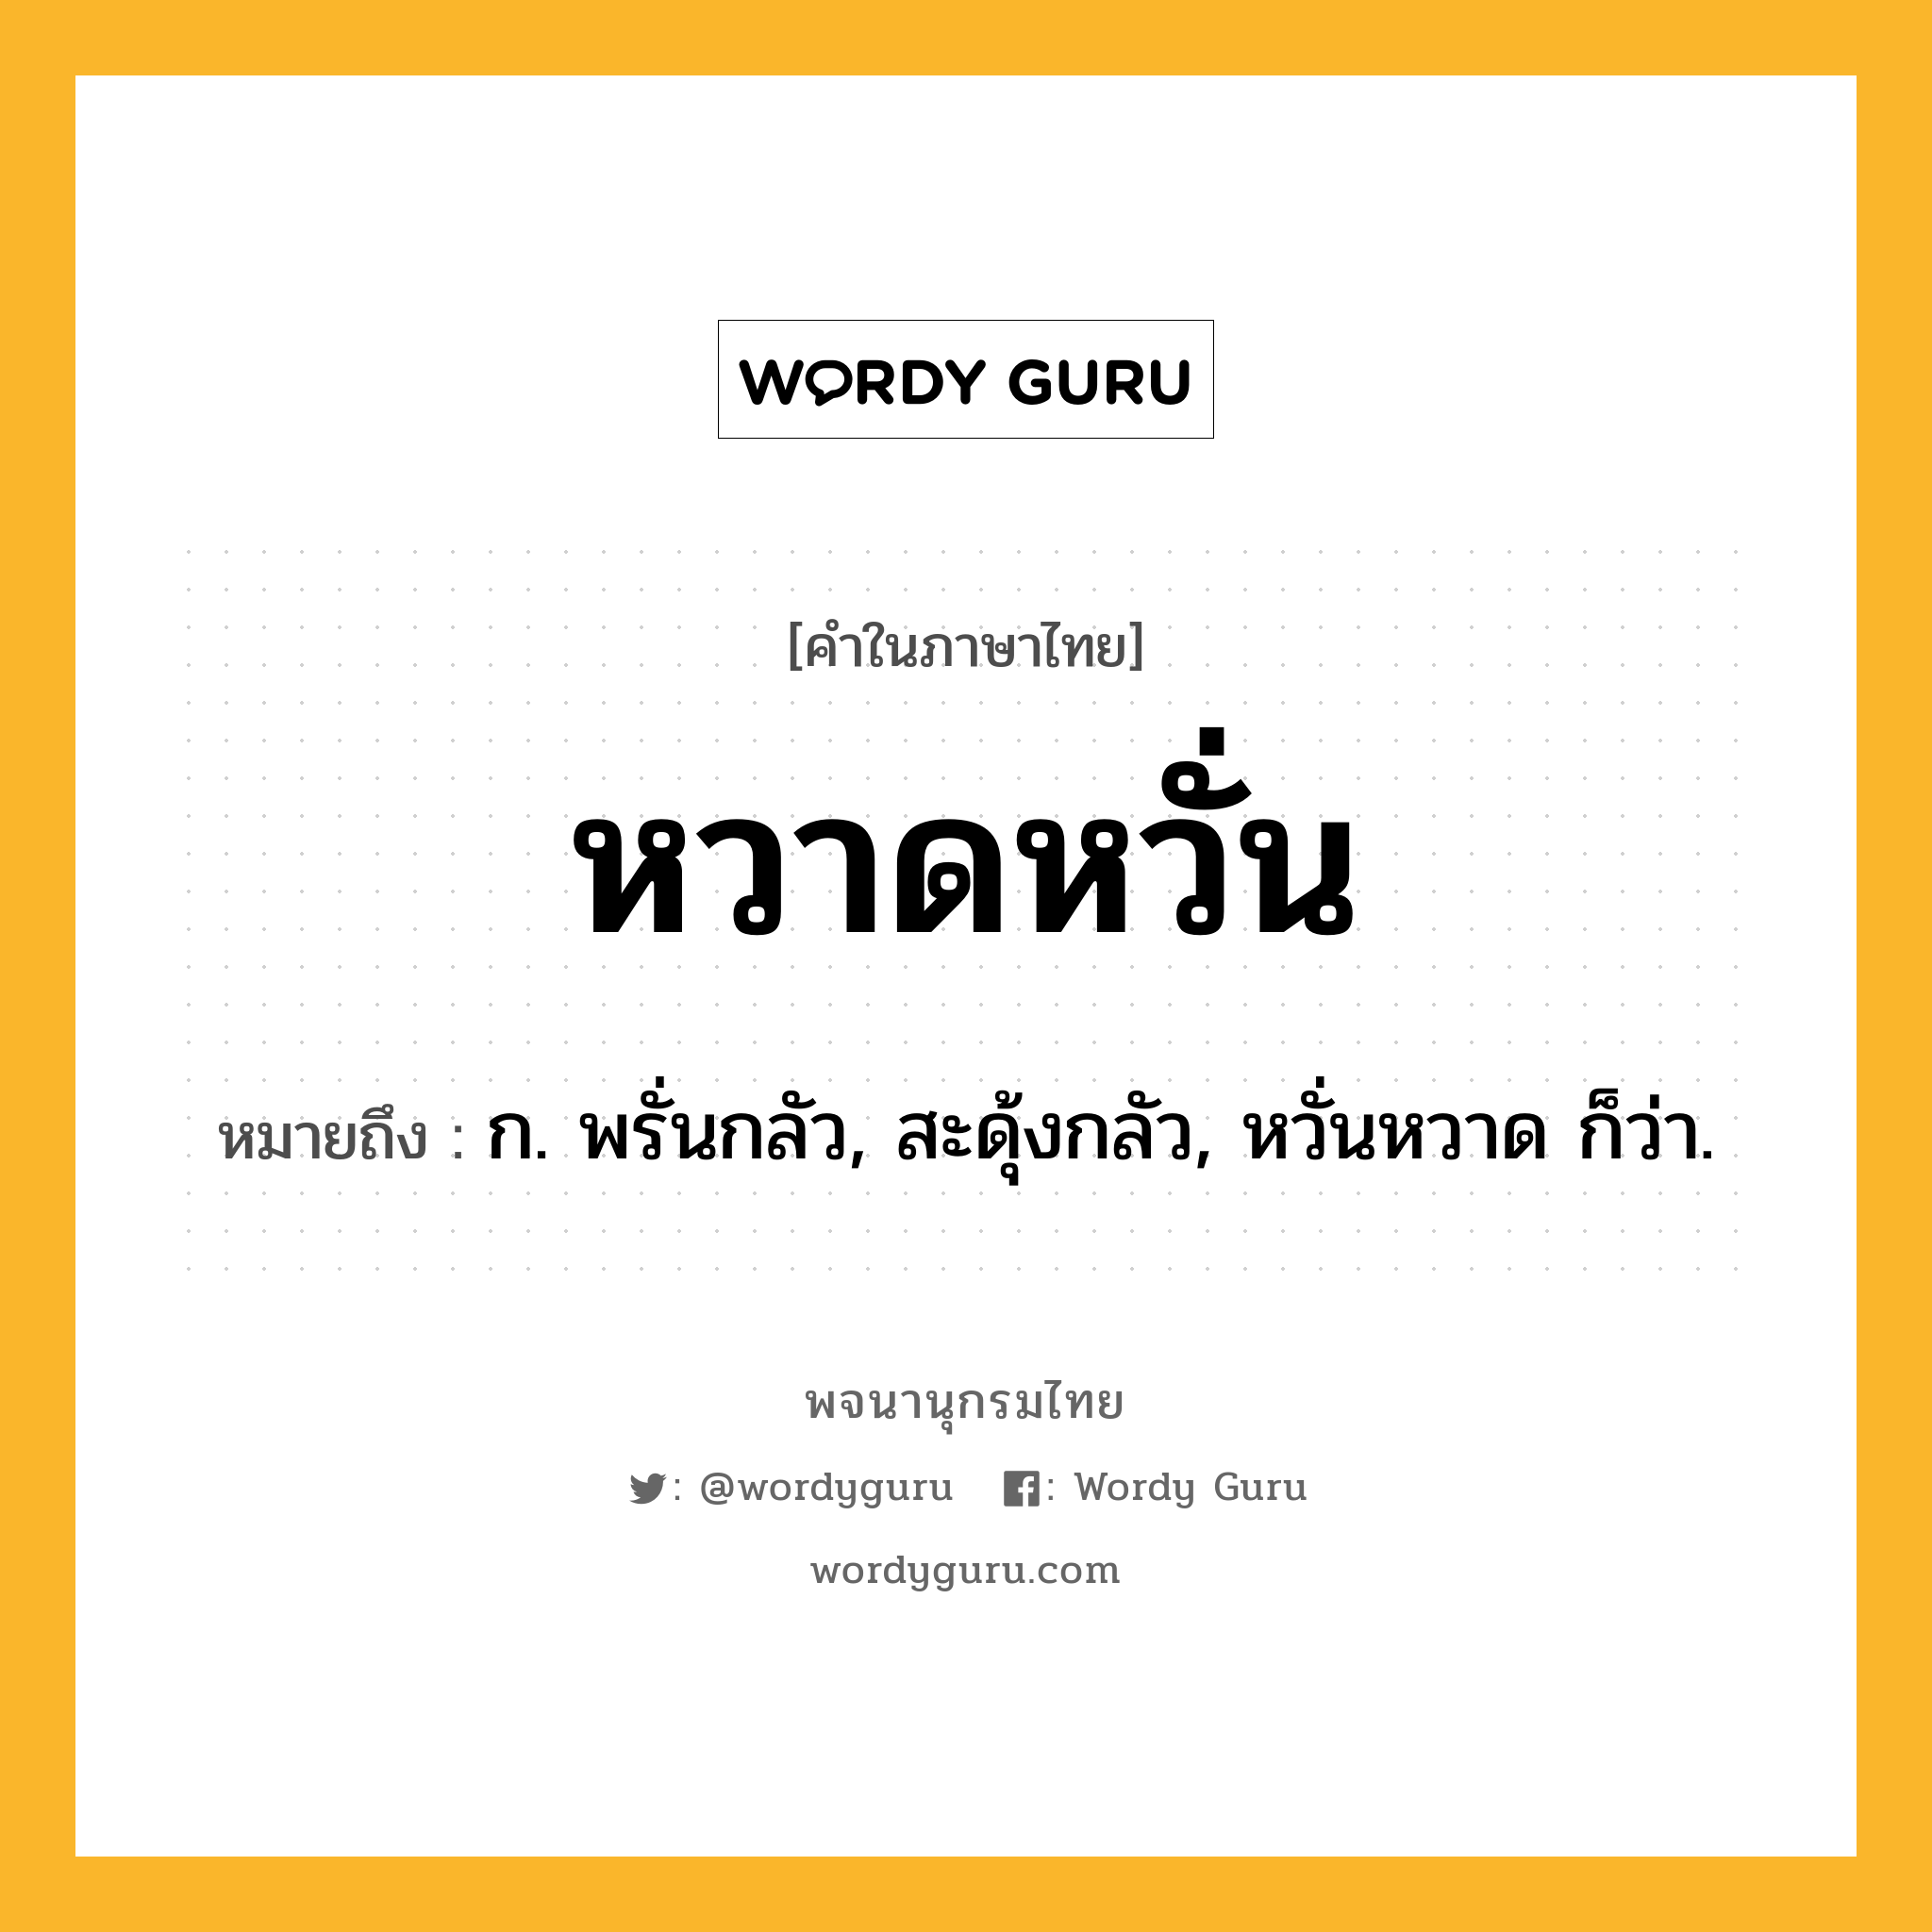 หวาดหวั่น หมายถึงอะไร?, คำในภาษาไทย หวาดหวั่น หมายถึง ก. พรั่นกลัว, สะดุ้งกลัว, หวั่นหวาด ก็ว่า.